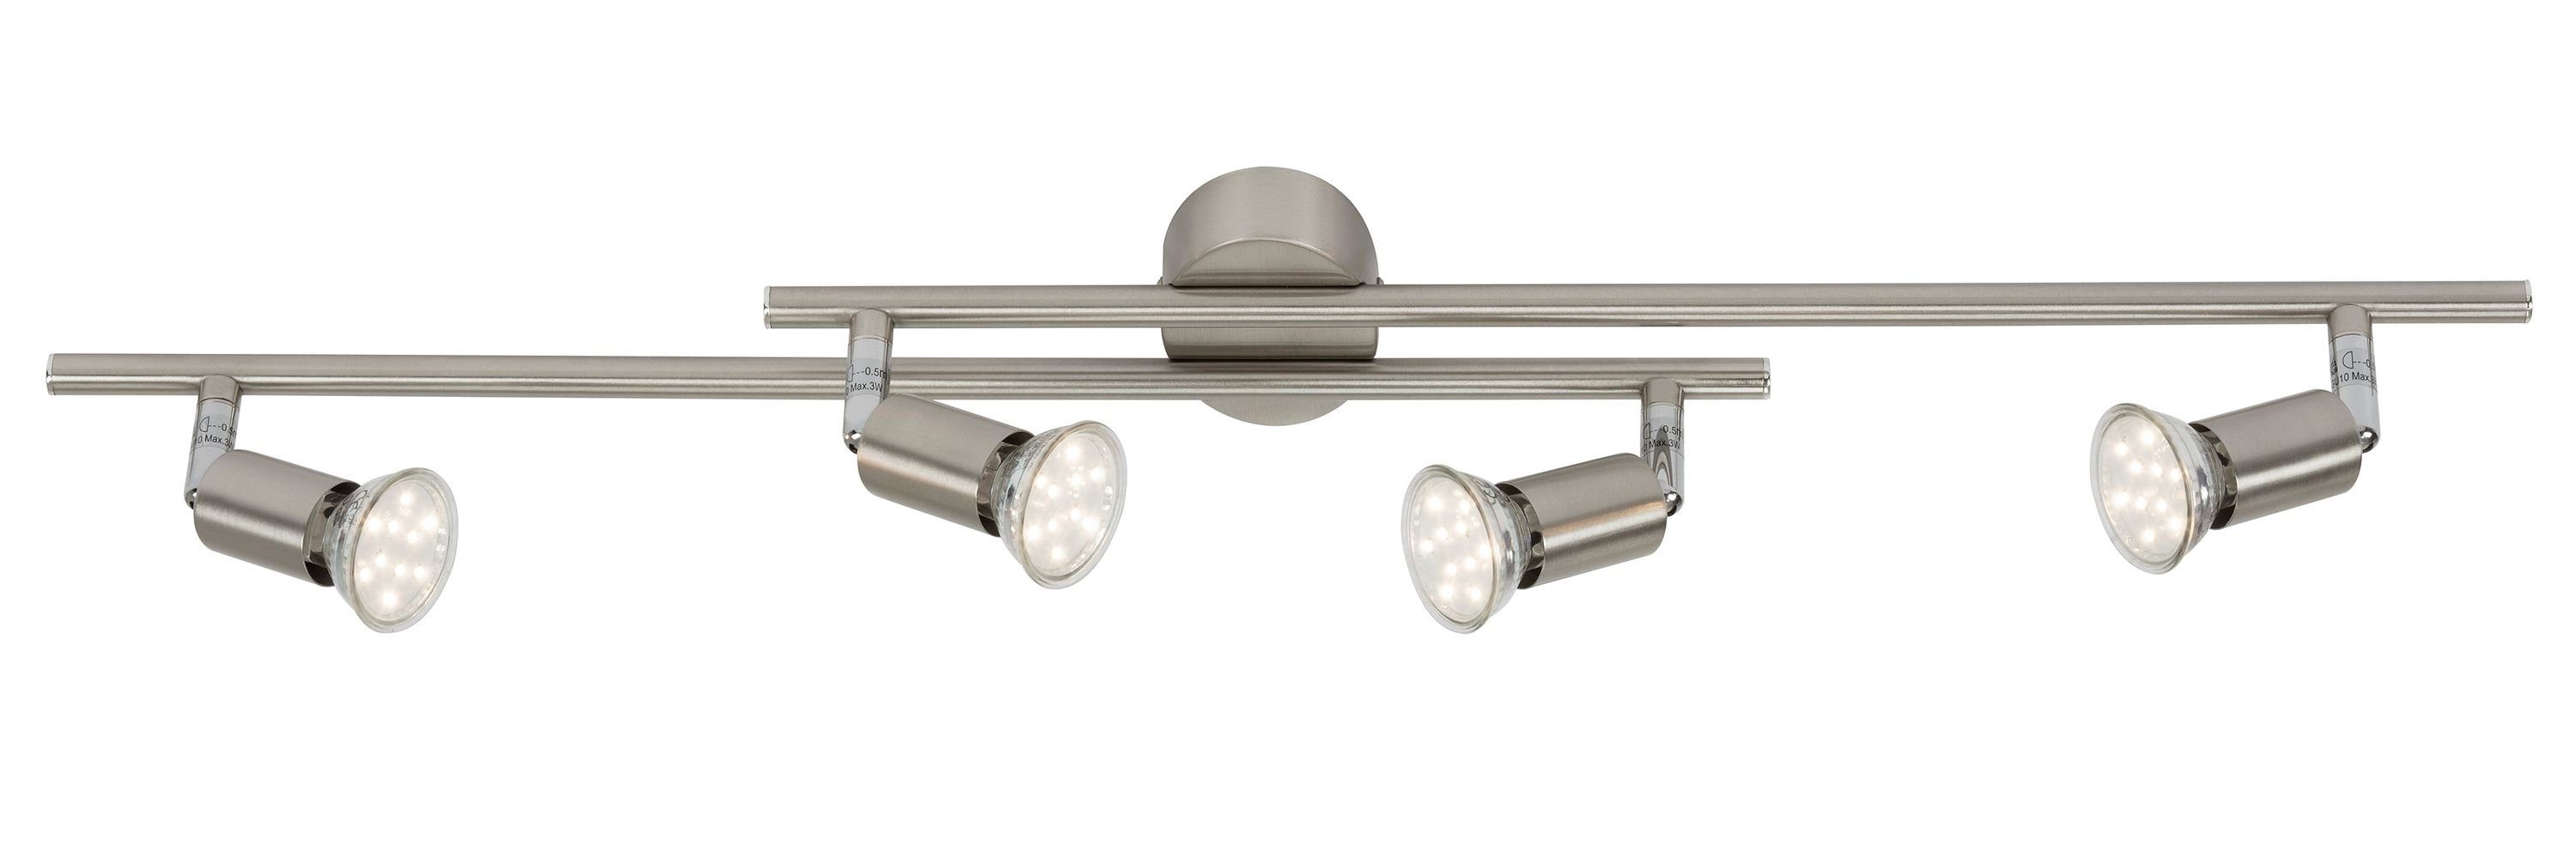 LED Deckenlampe Leuchten Deckenspots wechselbar, Briloner 2767-042, matt-nickel, GU10, Warmweiß, LED